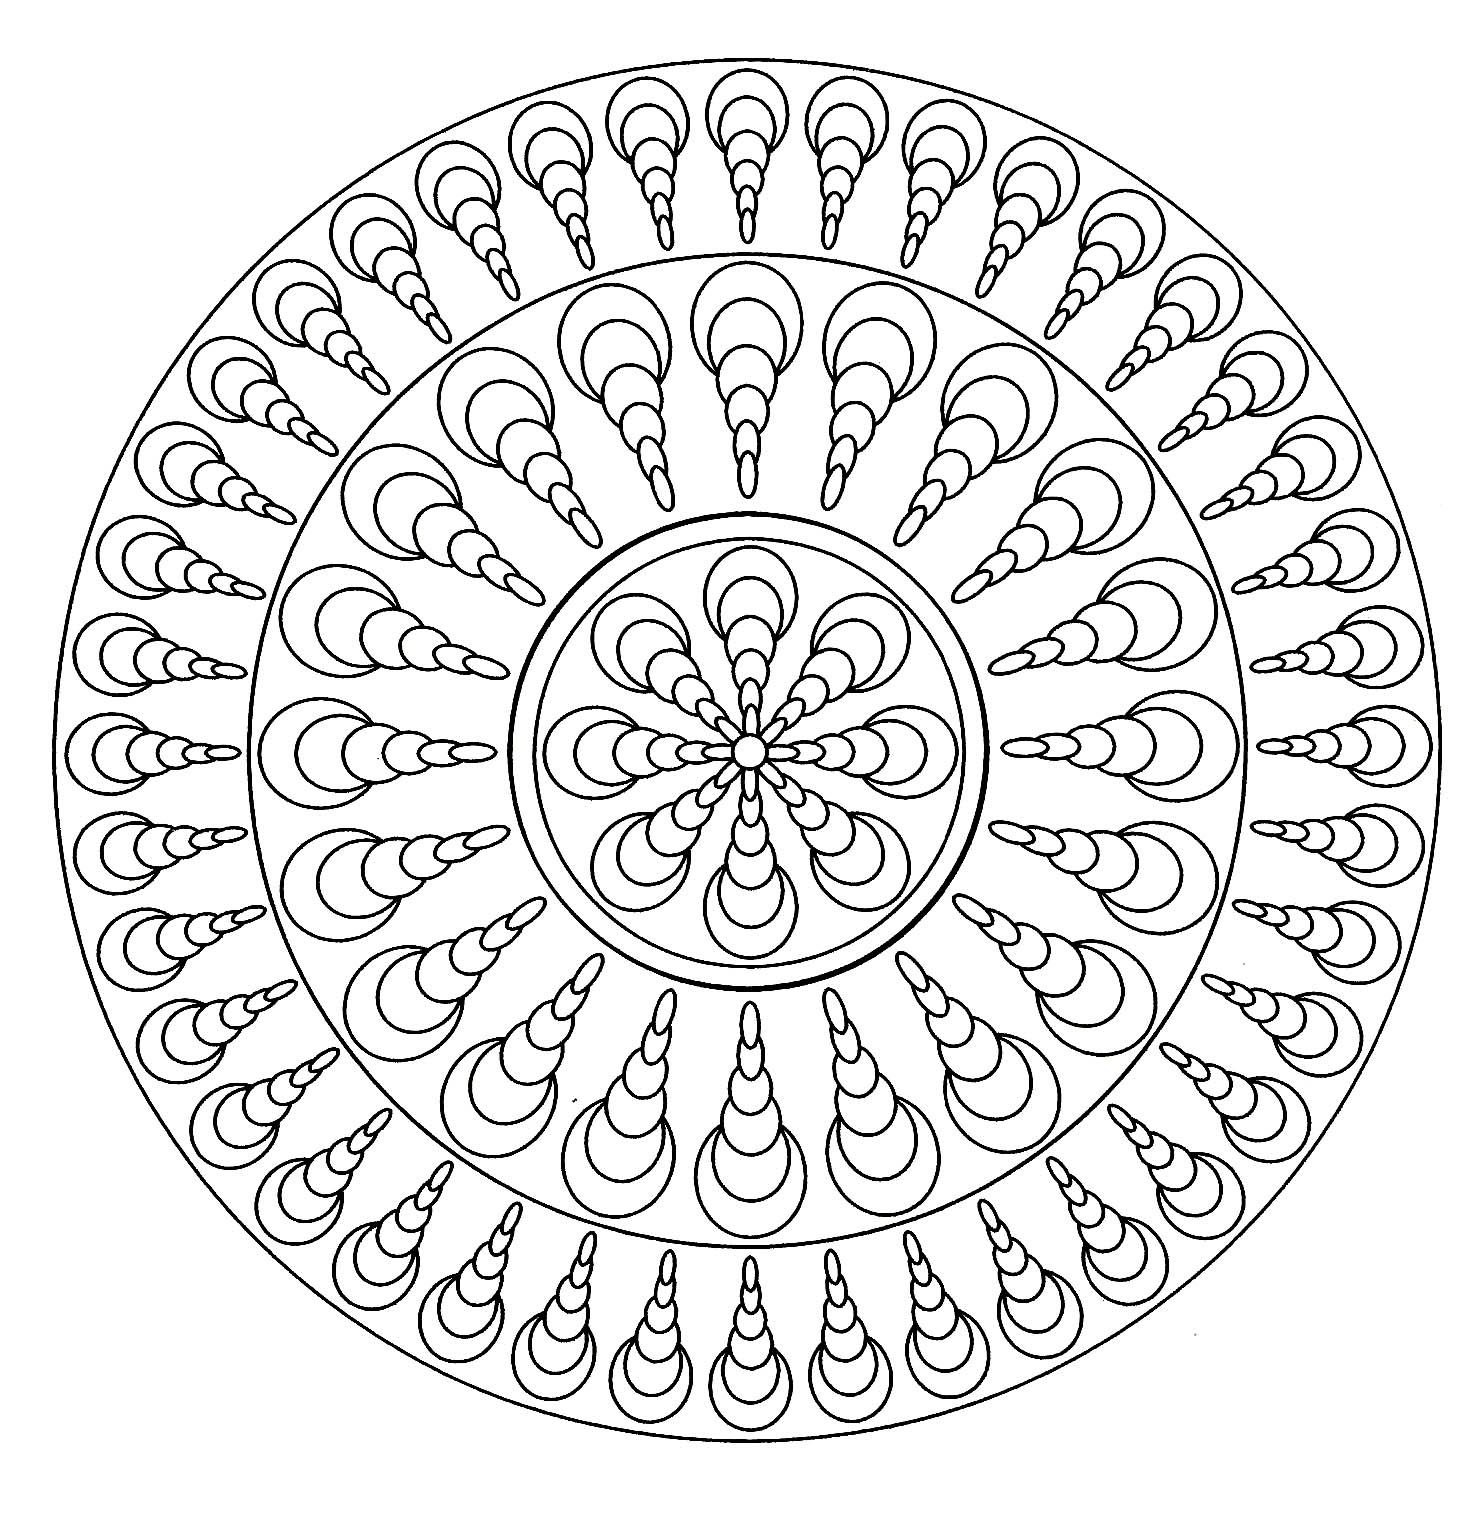 Mandala facile - 4 - Mandalas - Coloriages difficiles pour adultes